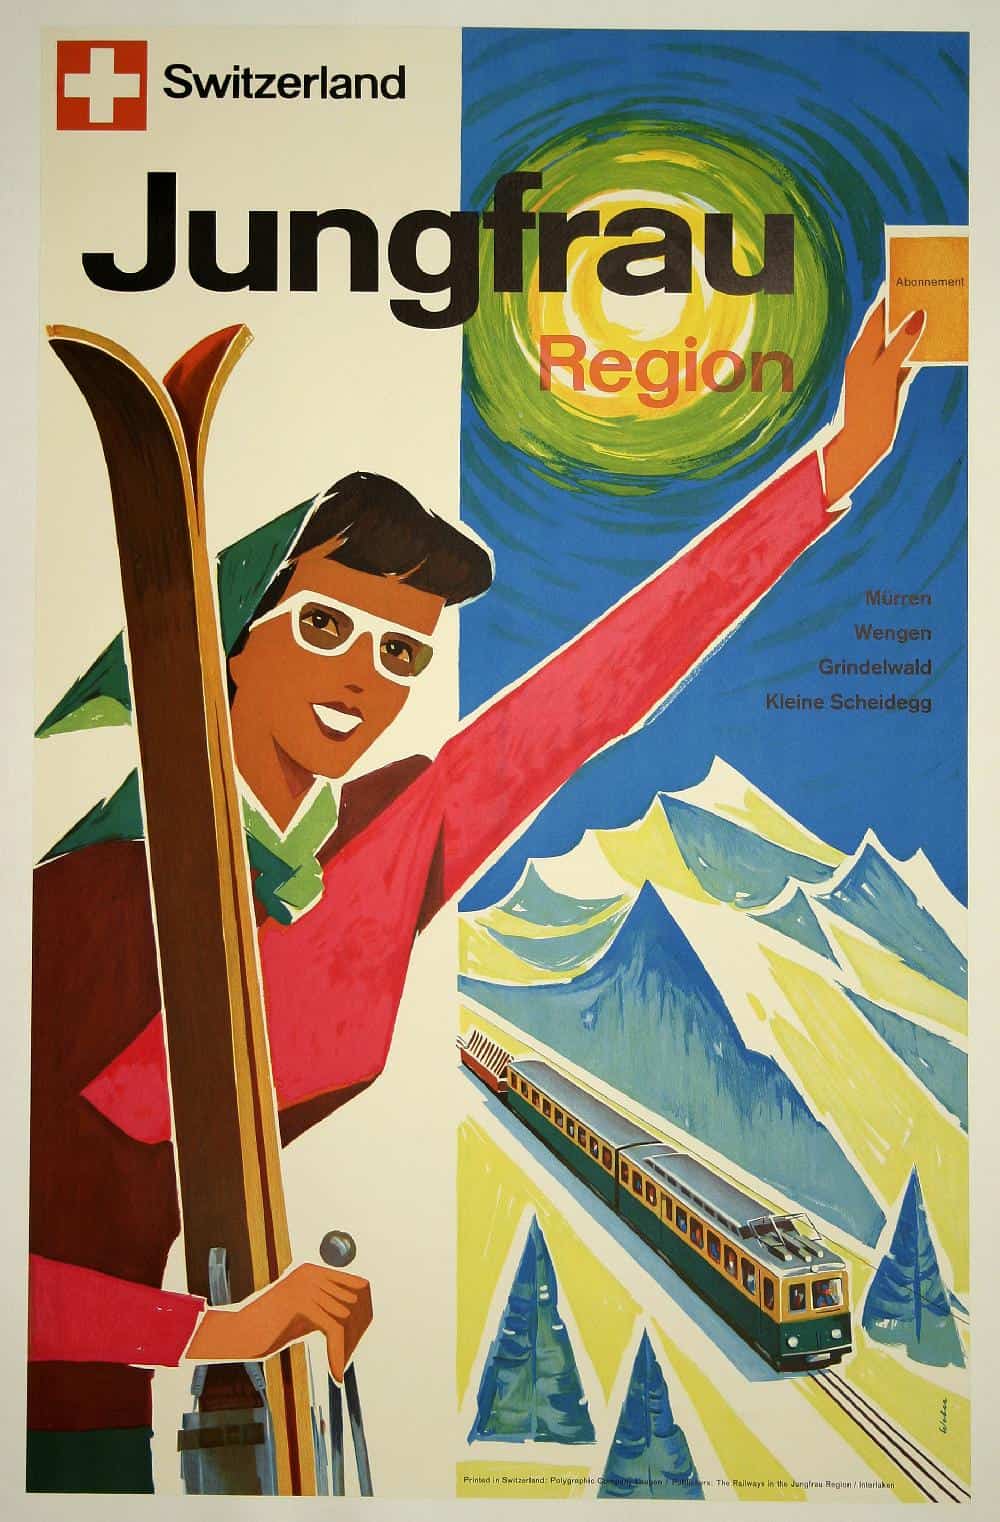 Switzerland - Jungfrau Region Vintage Tourism Poster